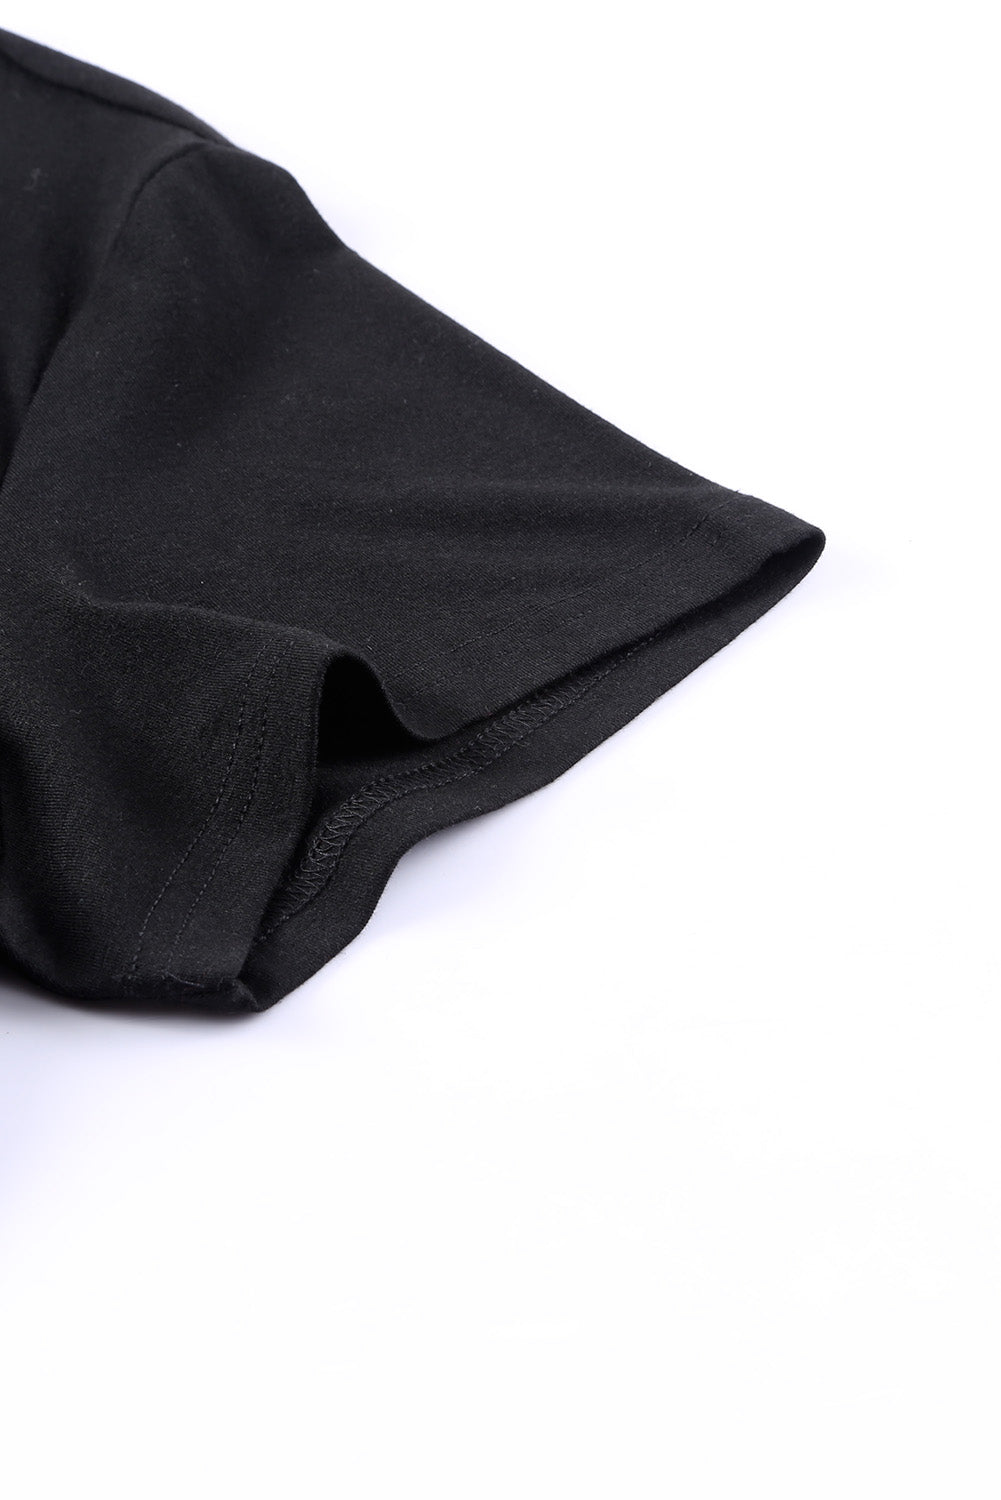 T-shirt noir à bordure en sequins, col en V, poche poitrine, grande taille